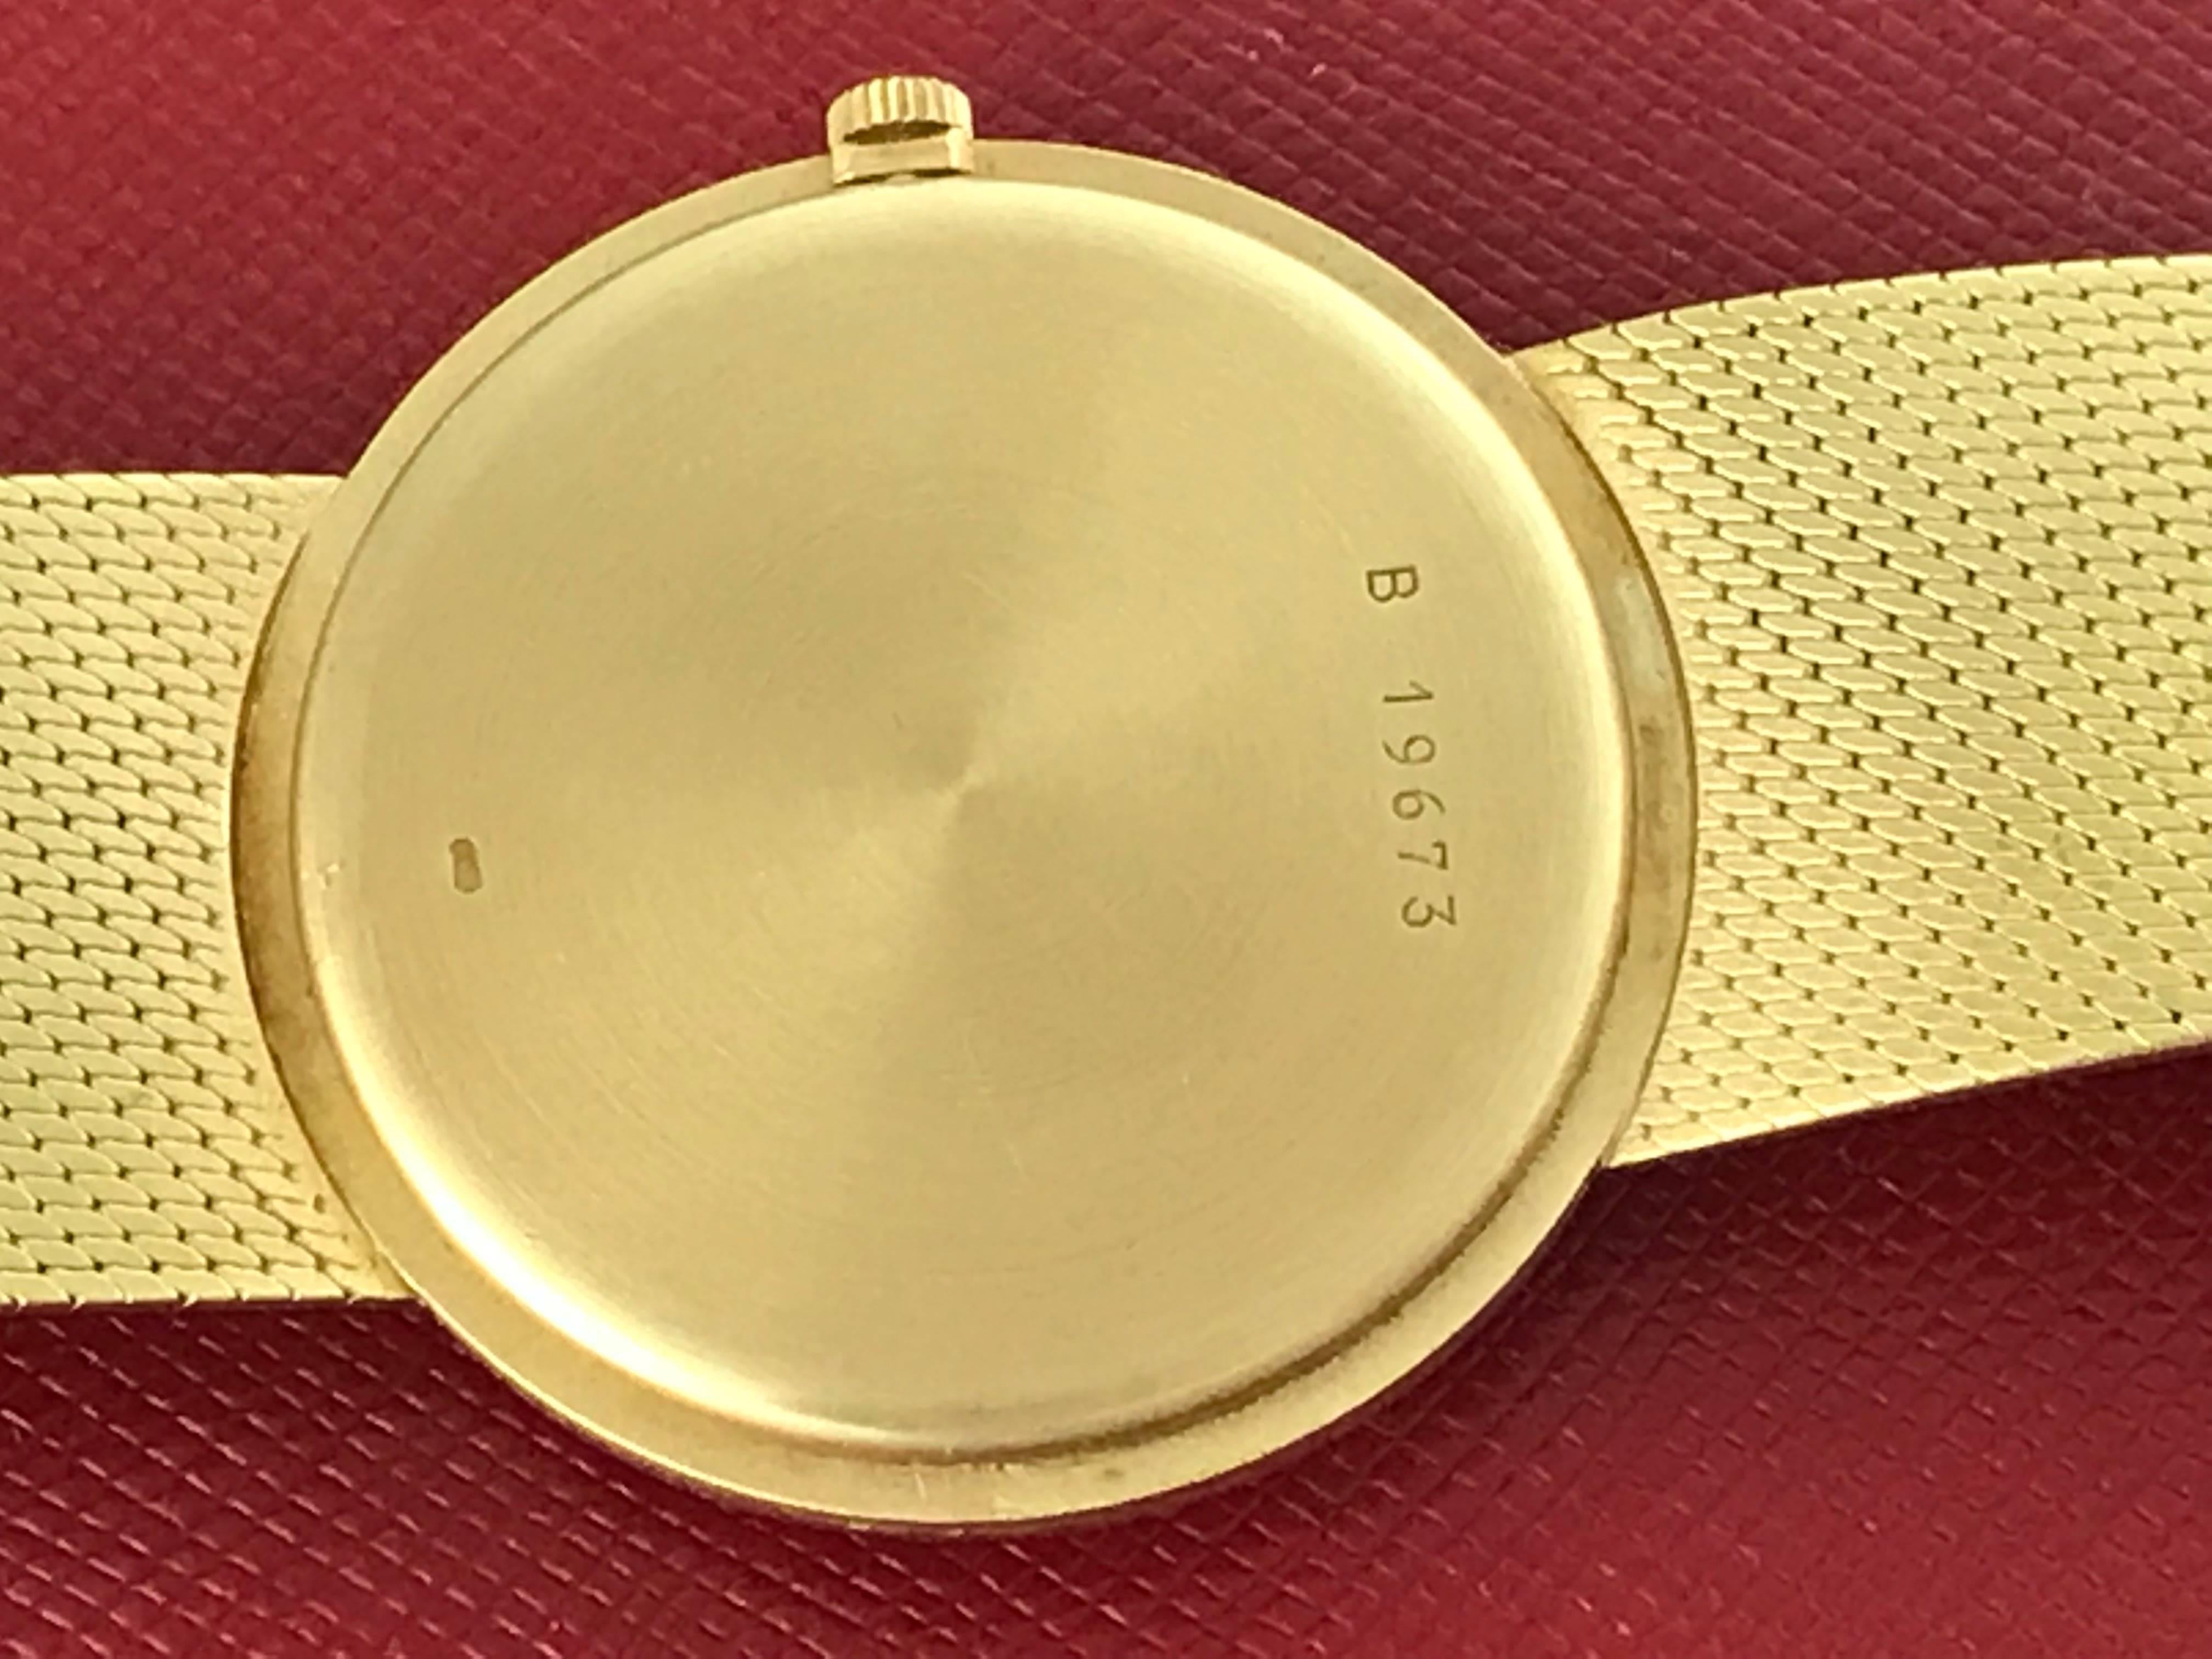 Audemars Piguet 18k Yellow Gold Midsize Manual Wind Wrist Watch For Sale 1